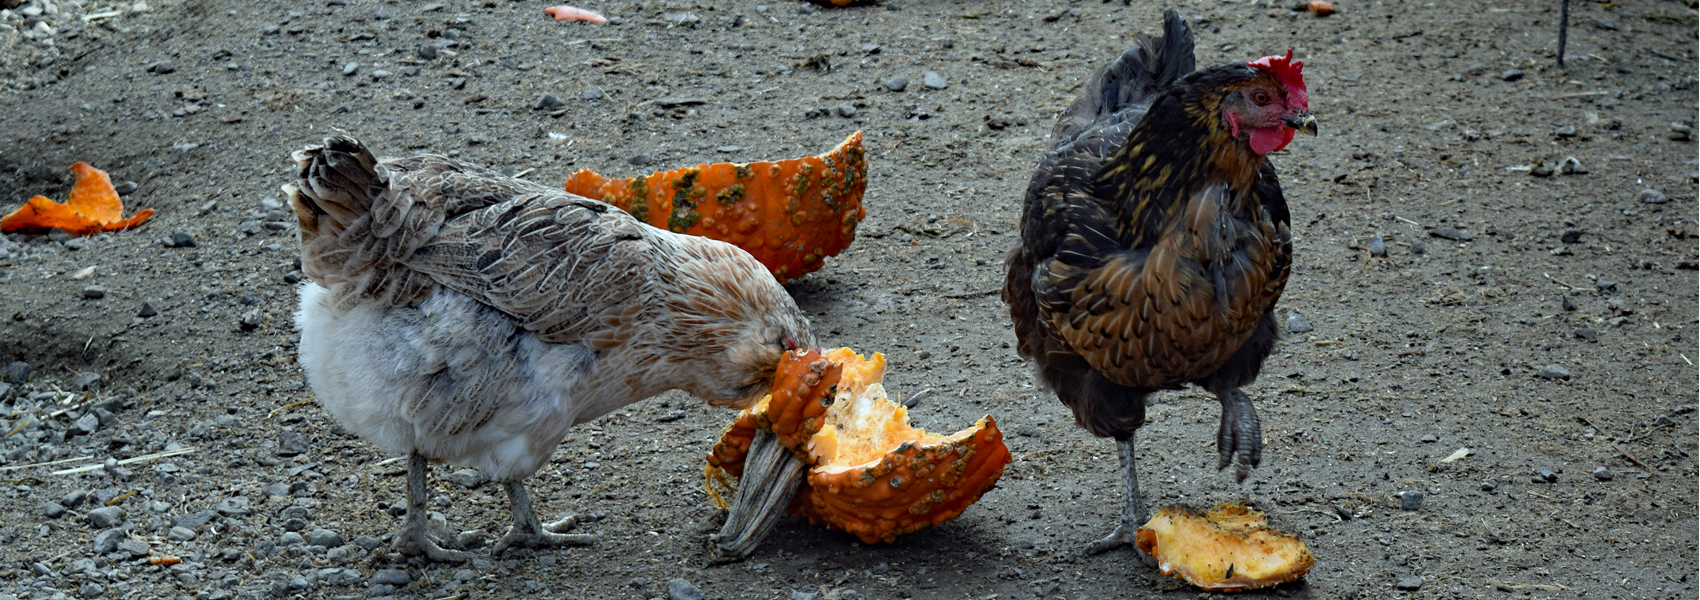 Chickens feeding in the barn yard